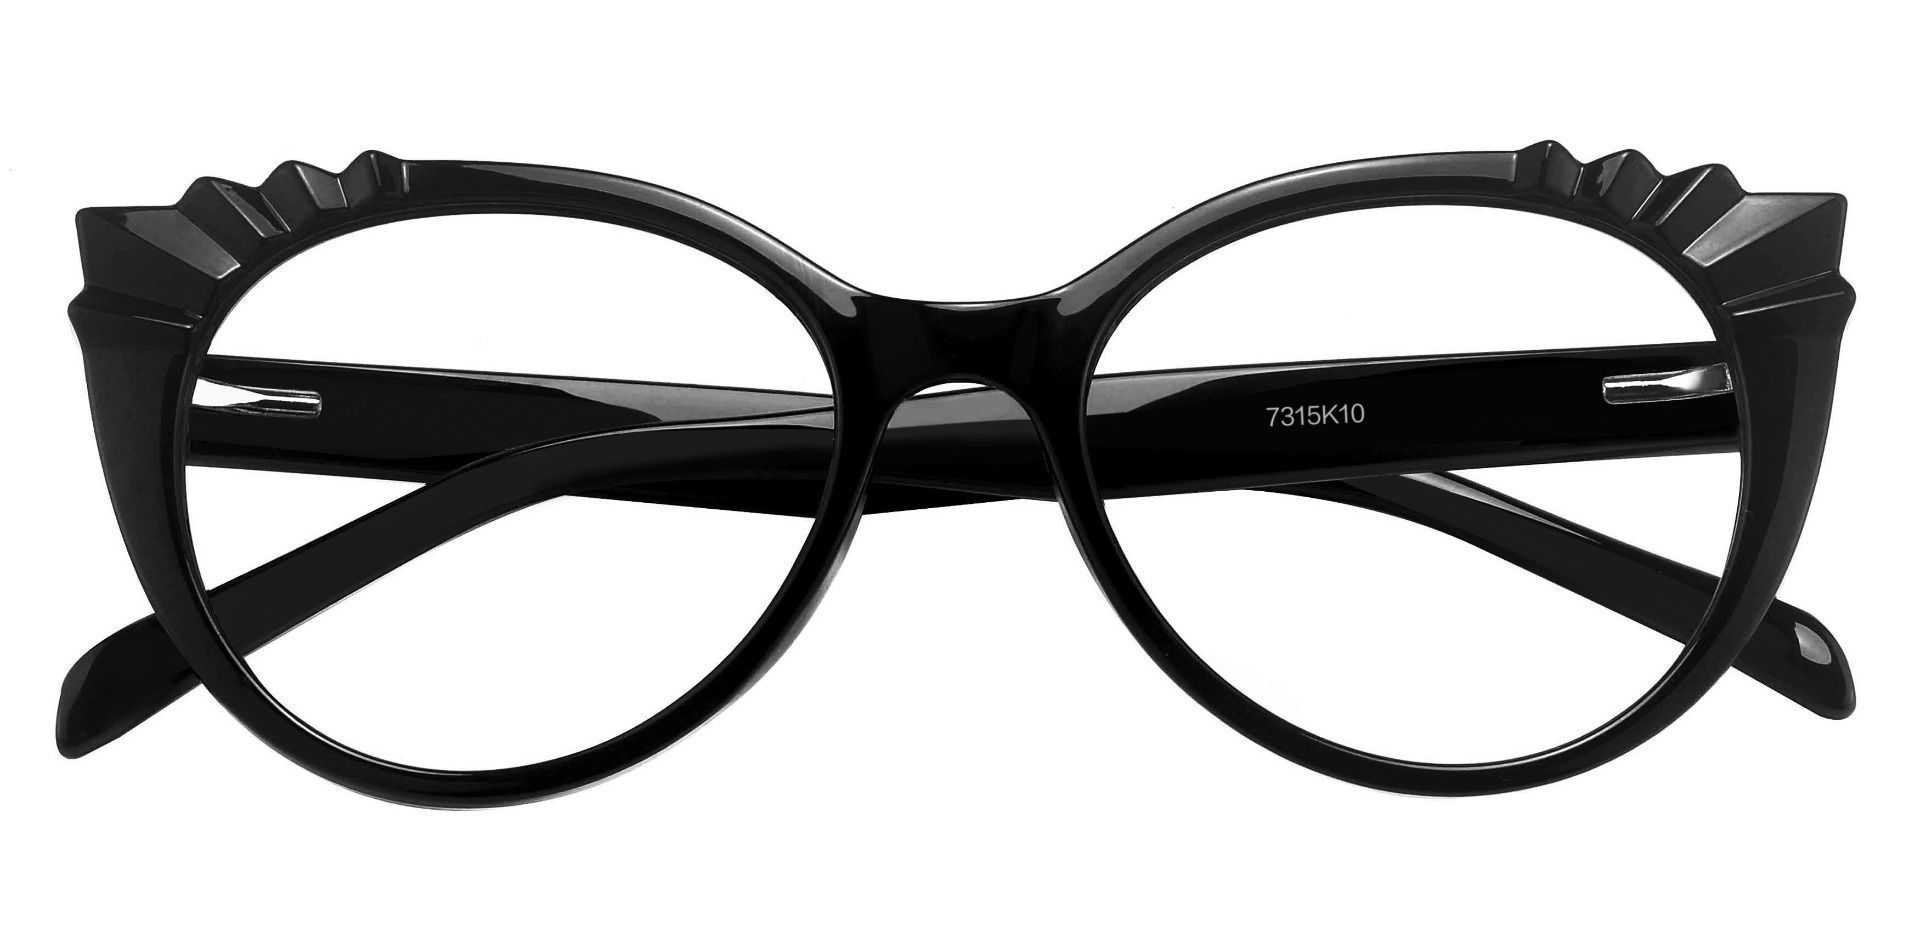 Hillcrest Cat Eye Prescription Glasses - Black